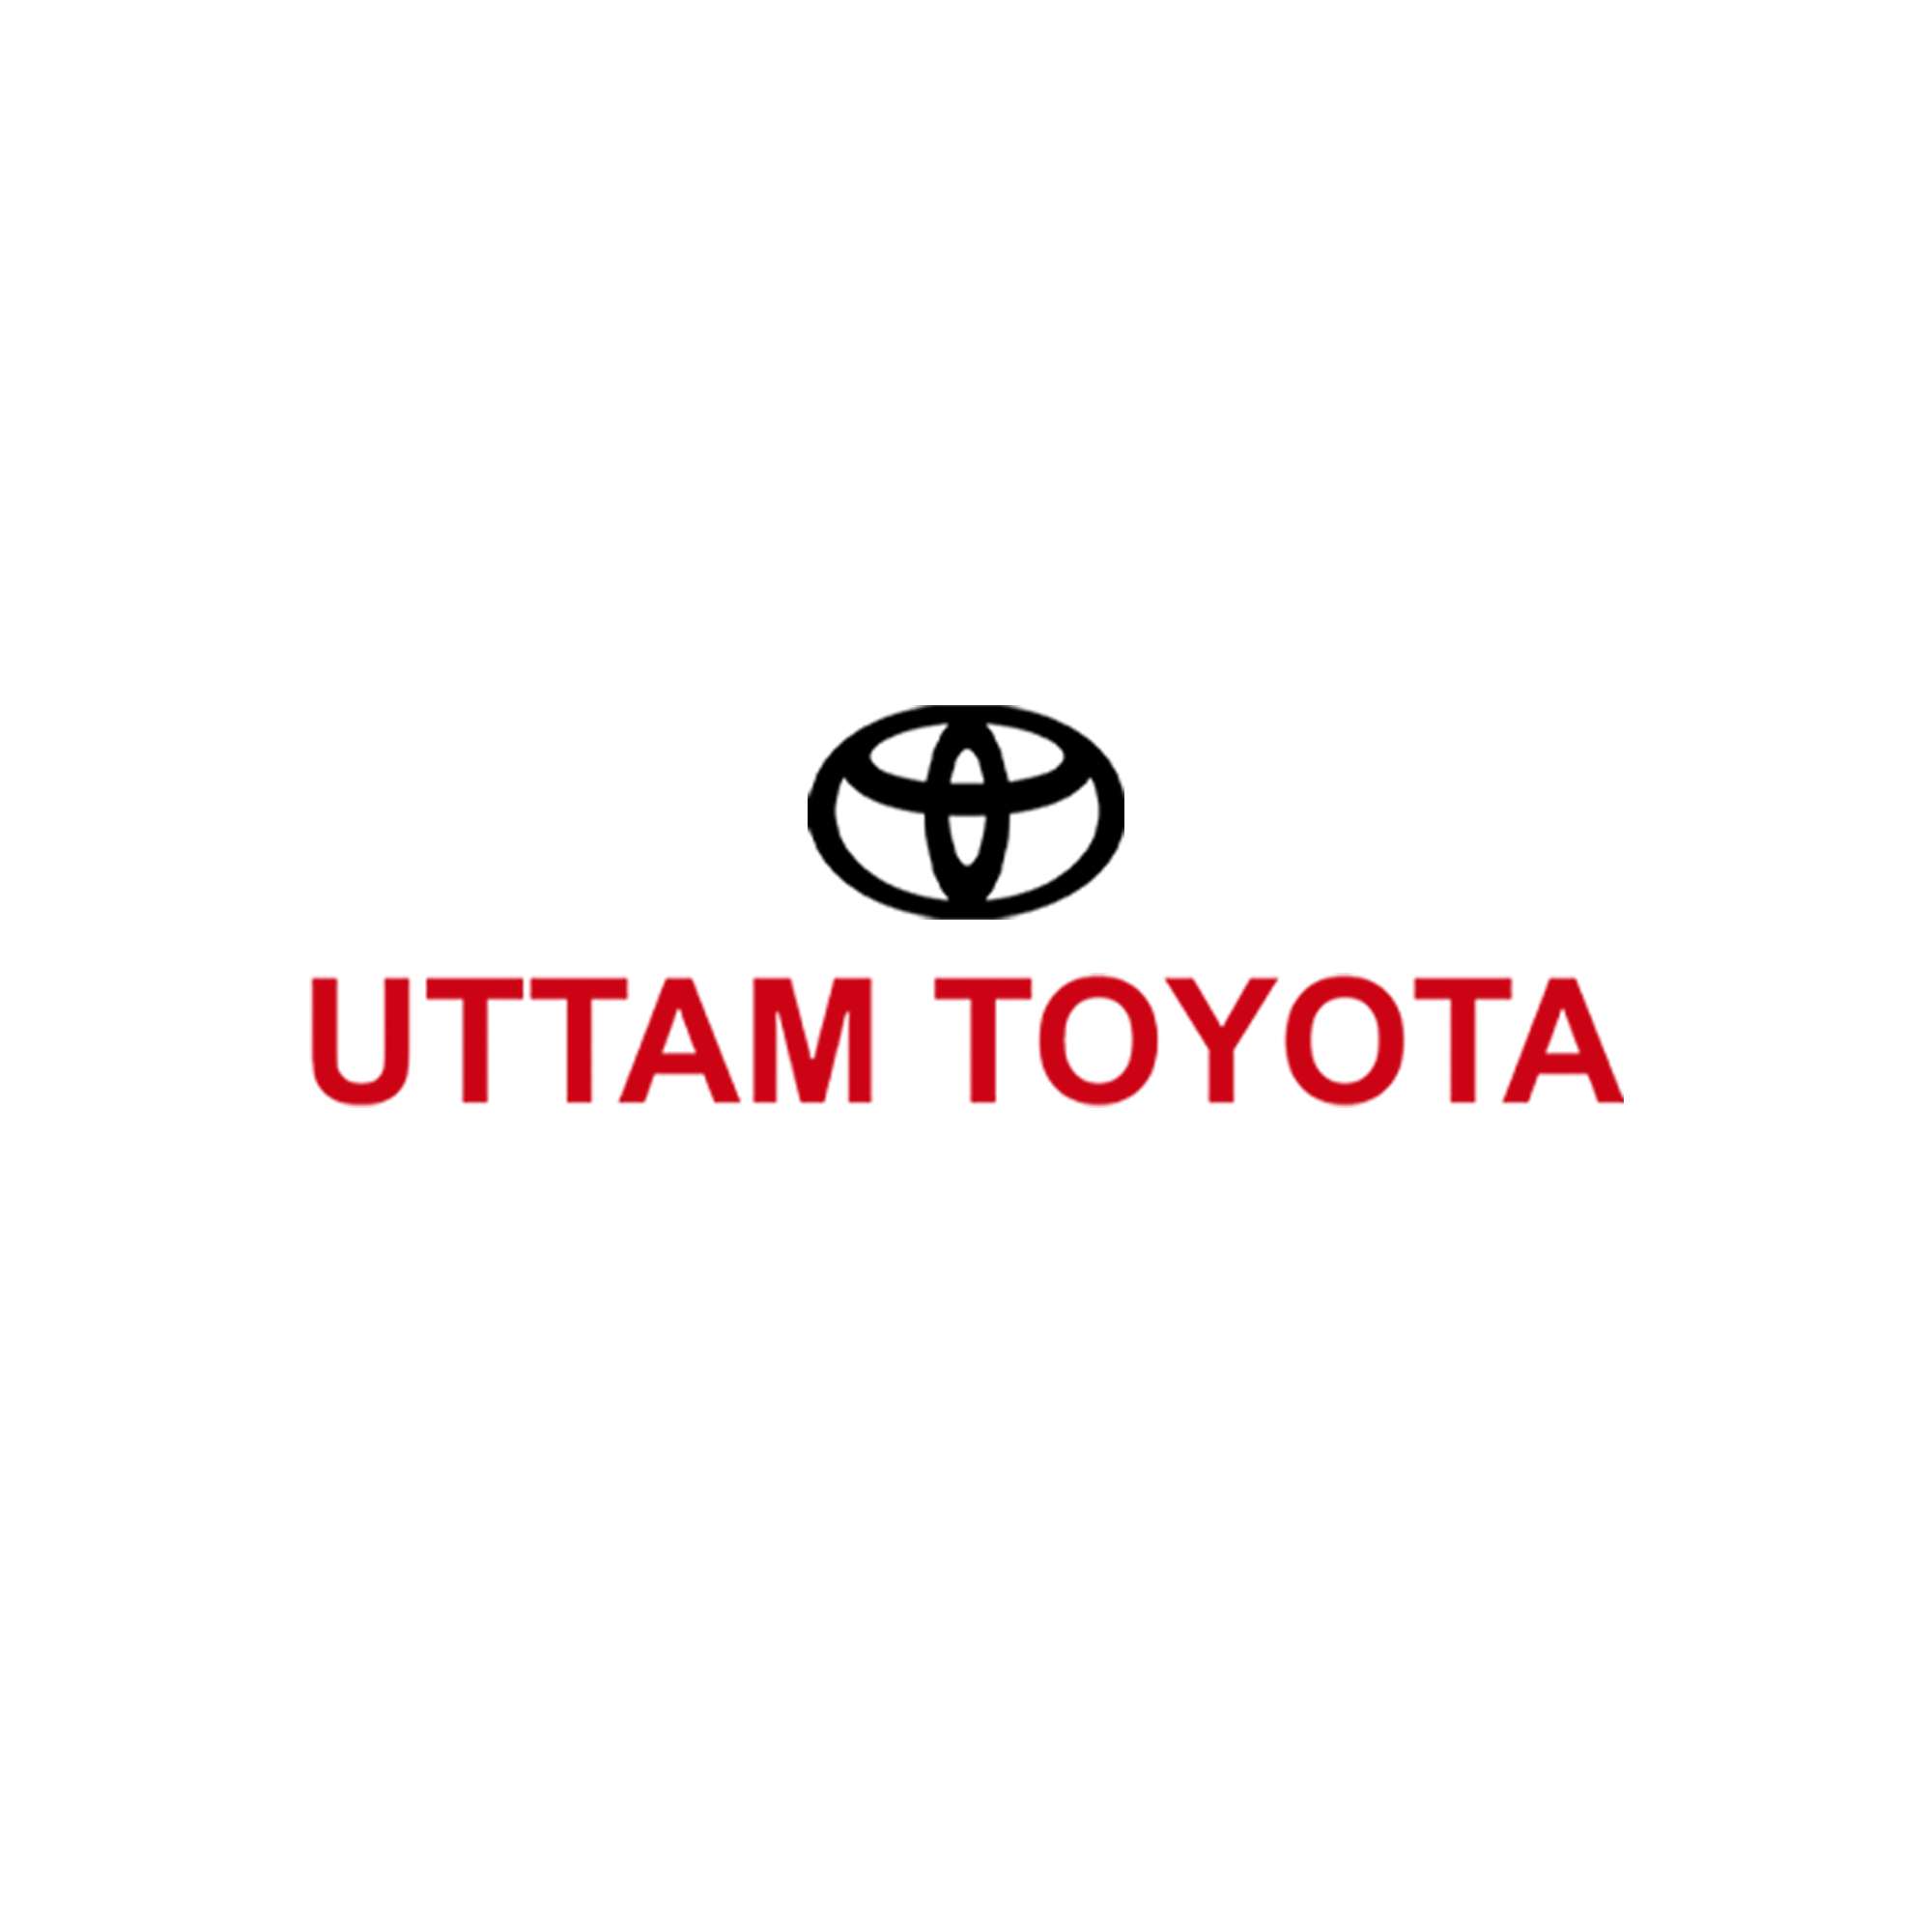 Uttam Toyota Profile, Logo, Contact, Reviews